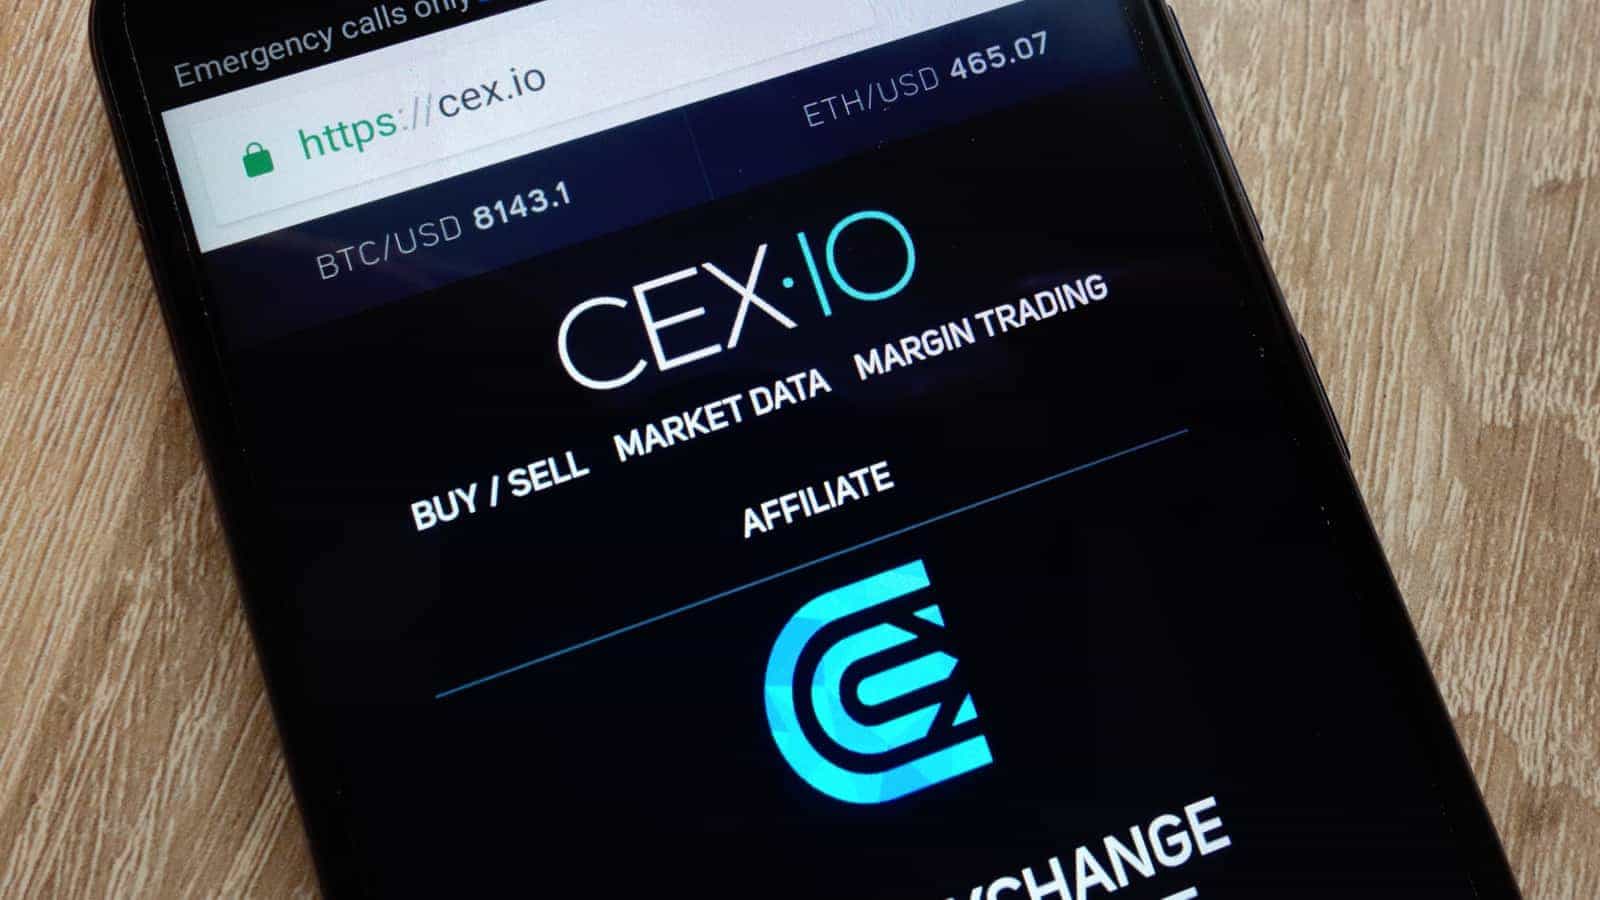 Buy CEX.IO Accounts